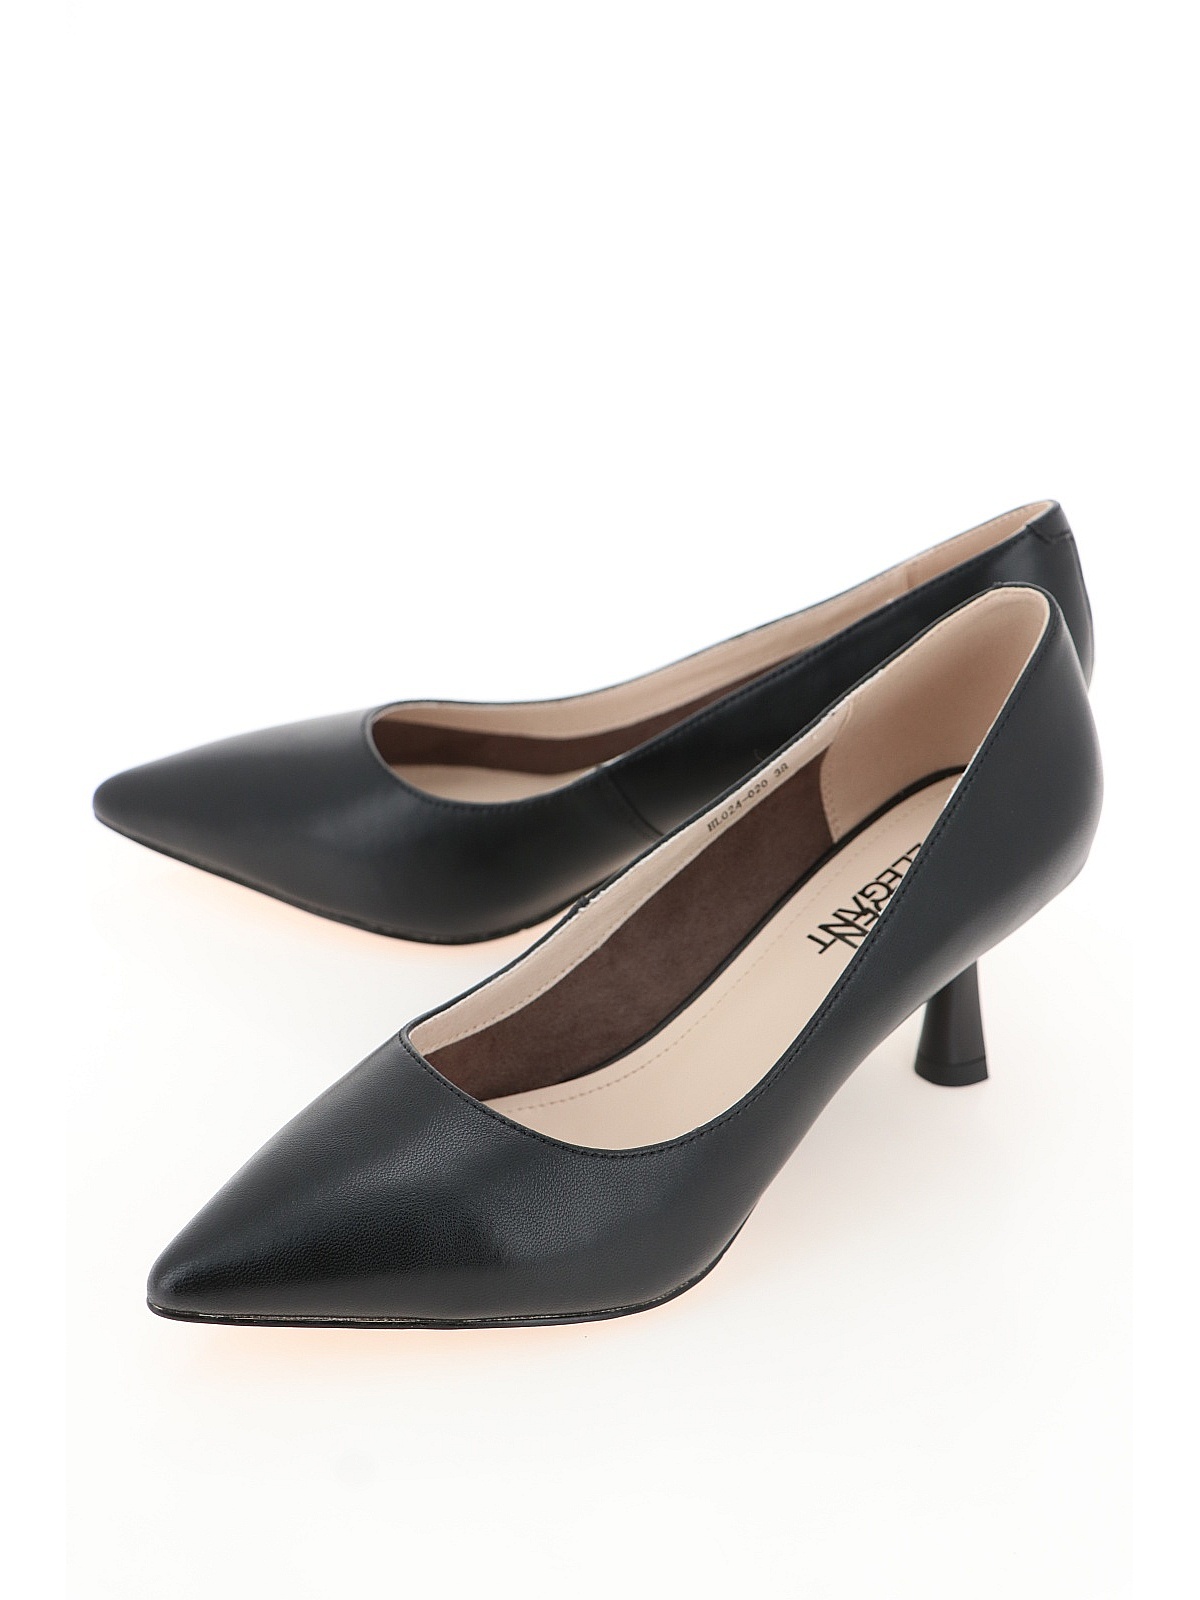 Туфли женские Baden HL024-020 черные 36 RU